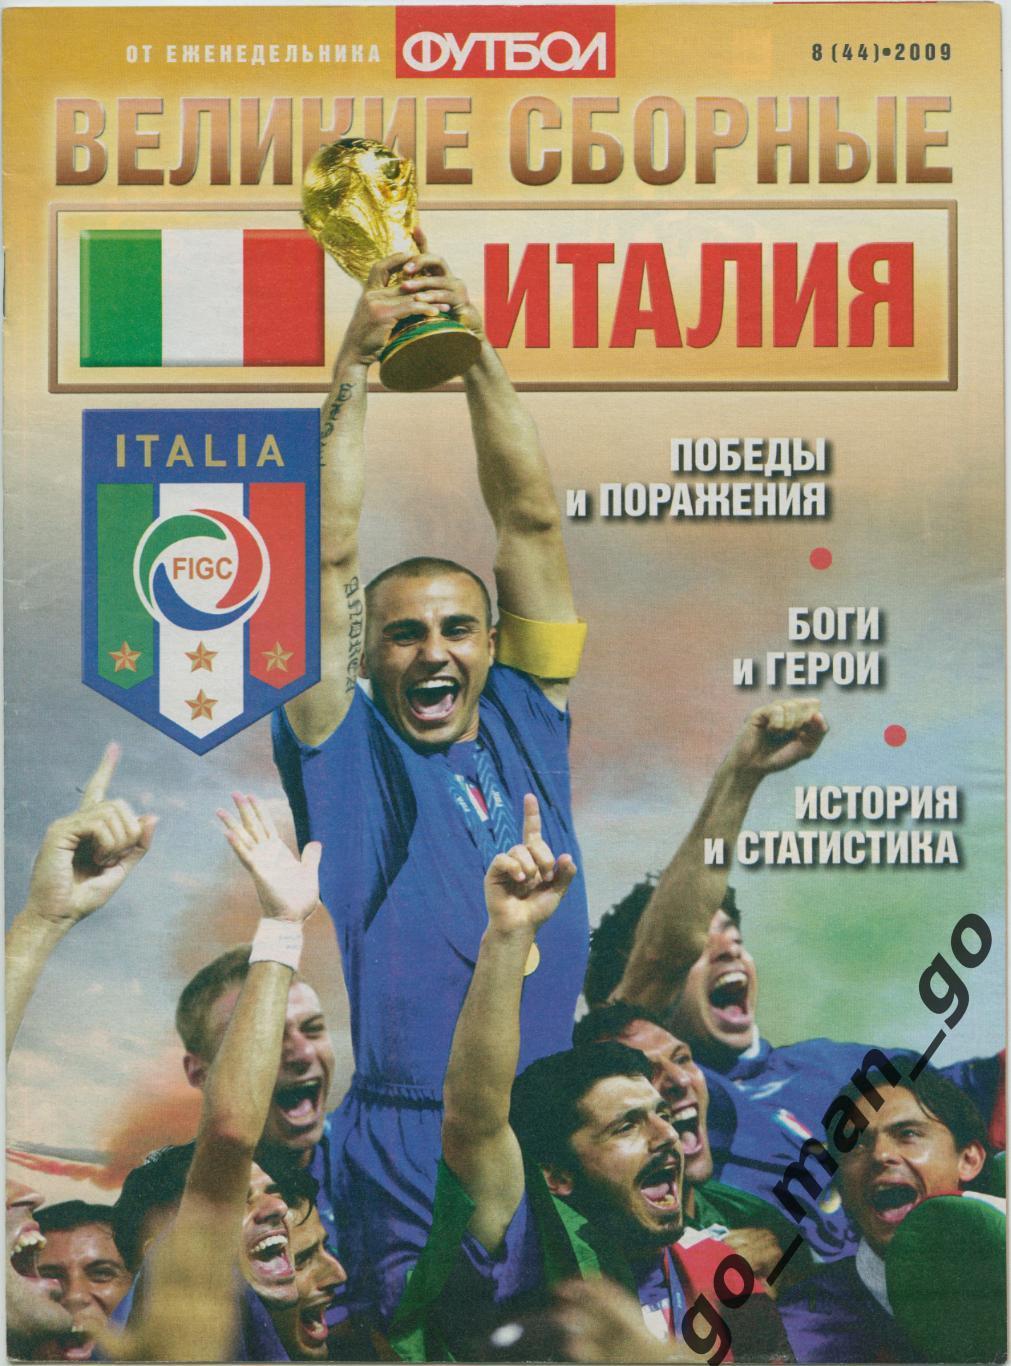 Еженедельник Футбол, Великие сборные, Италия. 2009, № 8.